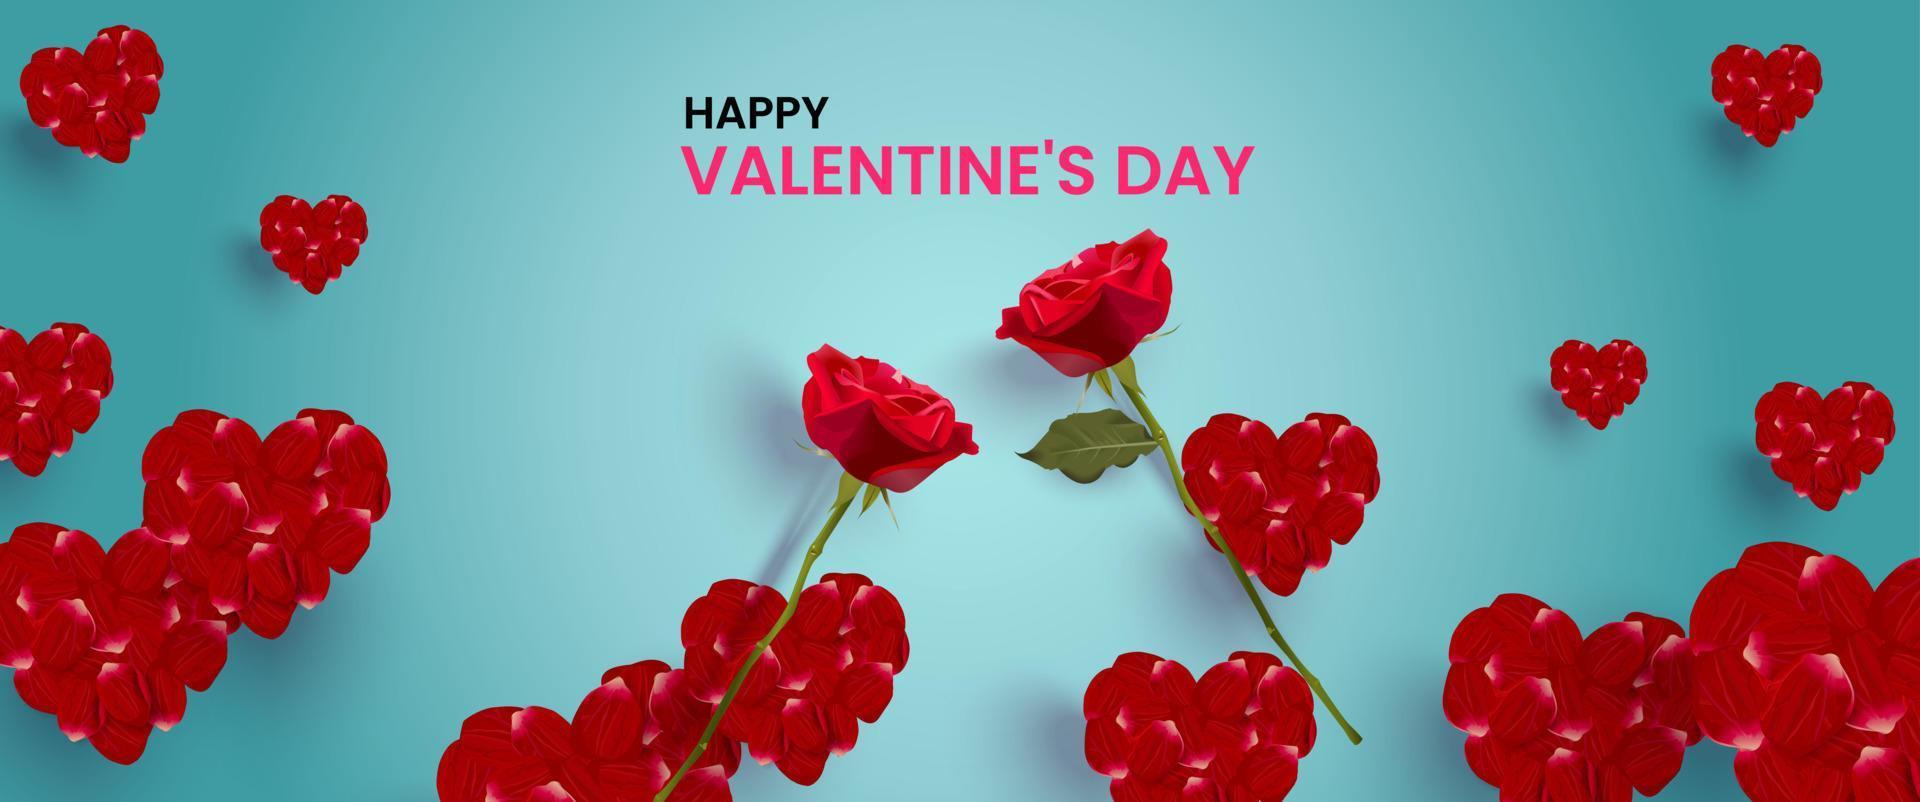 illustration vectorielle de fond de concept de saint valentin décorée de roses et de pétales de rose disposés en forme de coeur. jolie bannière de vente d'amour ou carte de voeux. vecteur